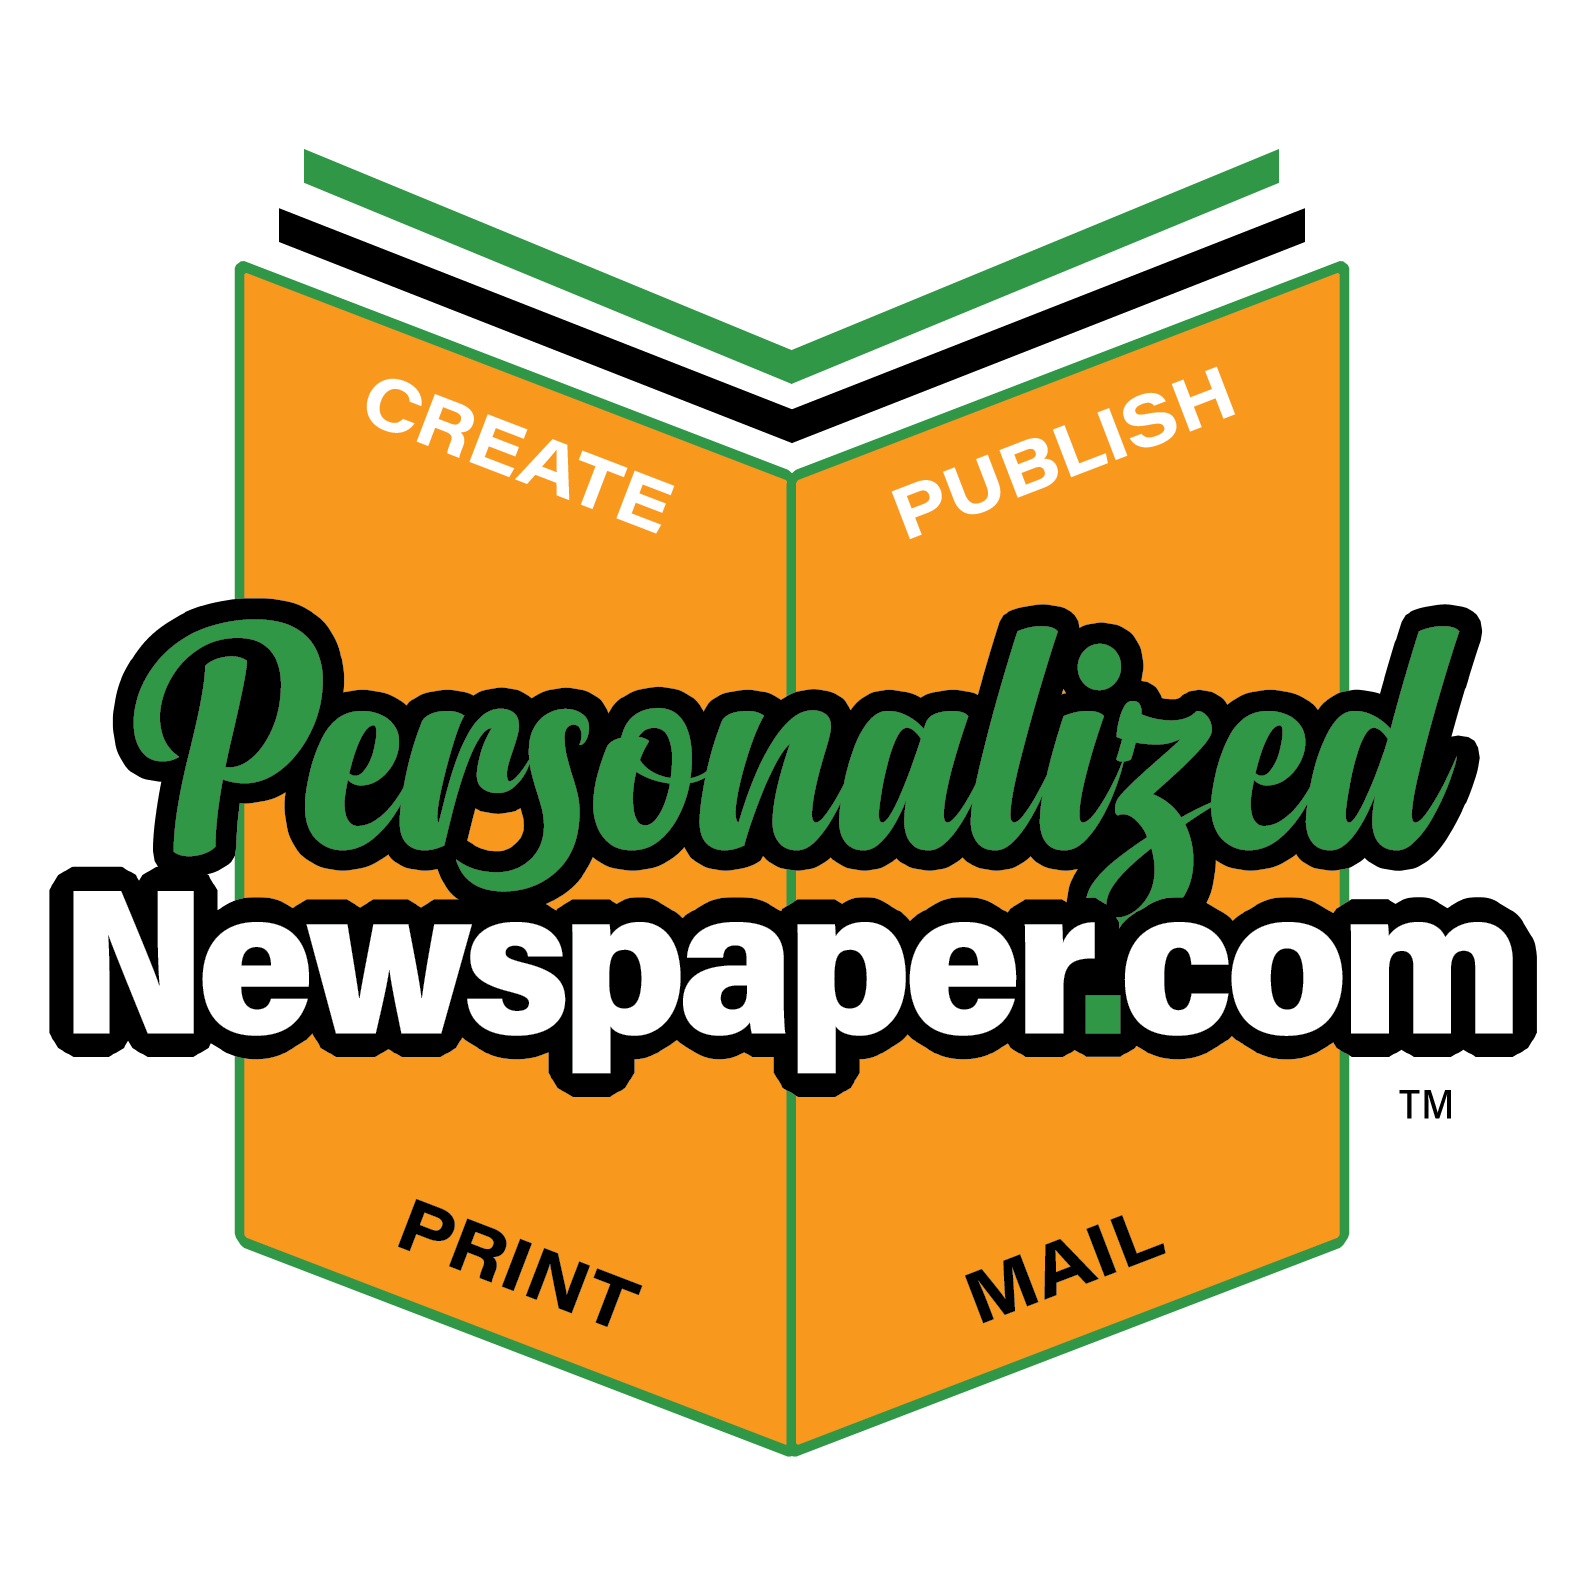 PersonalizedNewspaper.com, Inc. Official Logo